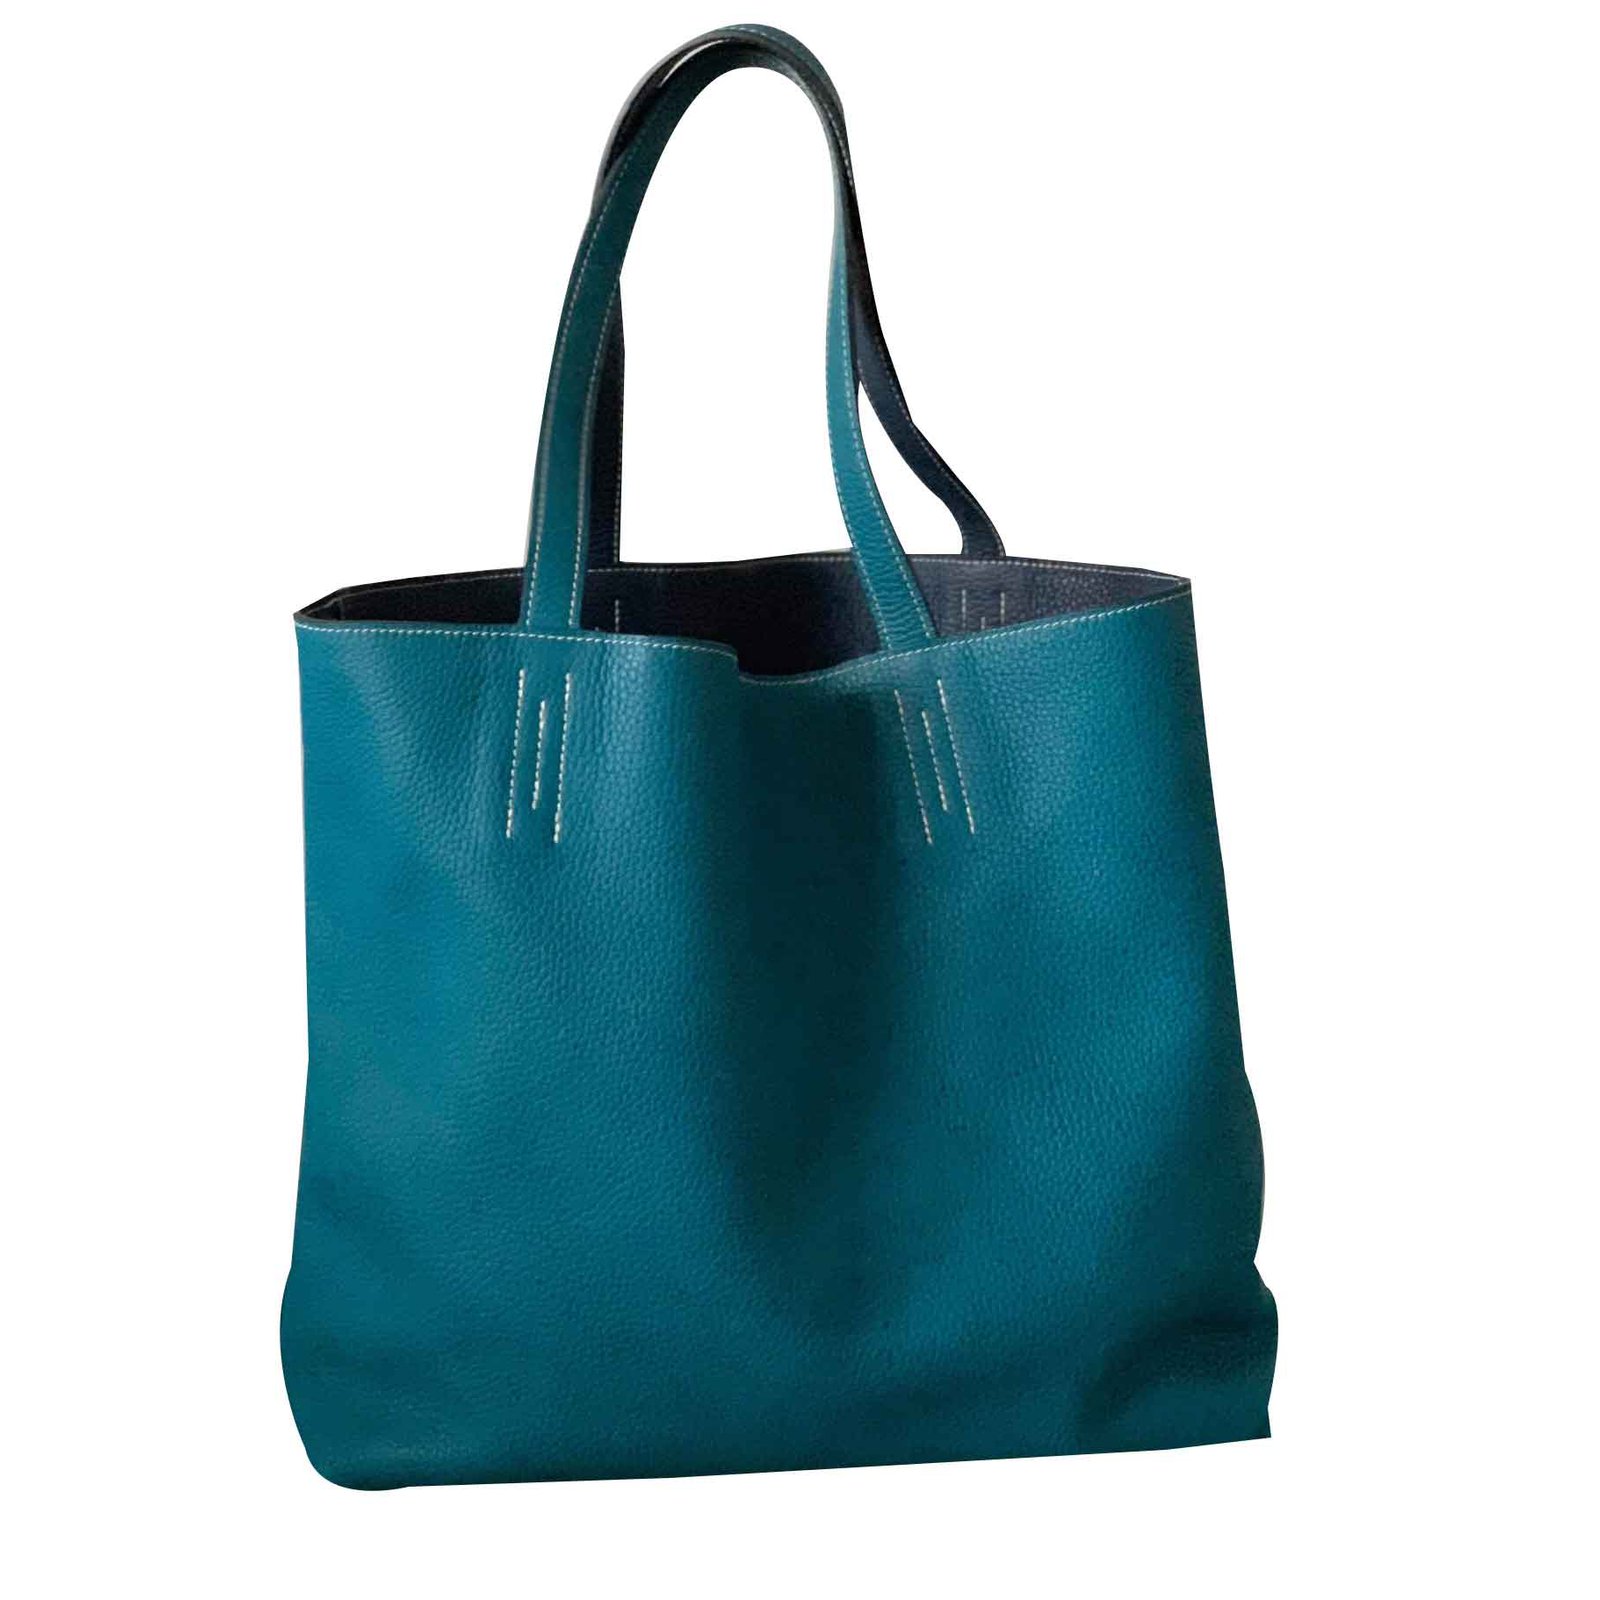 https://cdn1.jolicloset.com/imgr/full/2019/02/107064-1/hermes-navy-blue-leather-lined-meaning-handbags.jpg